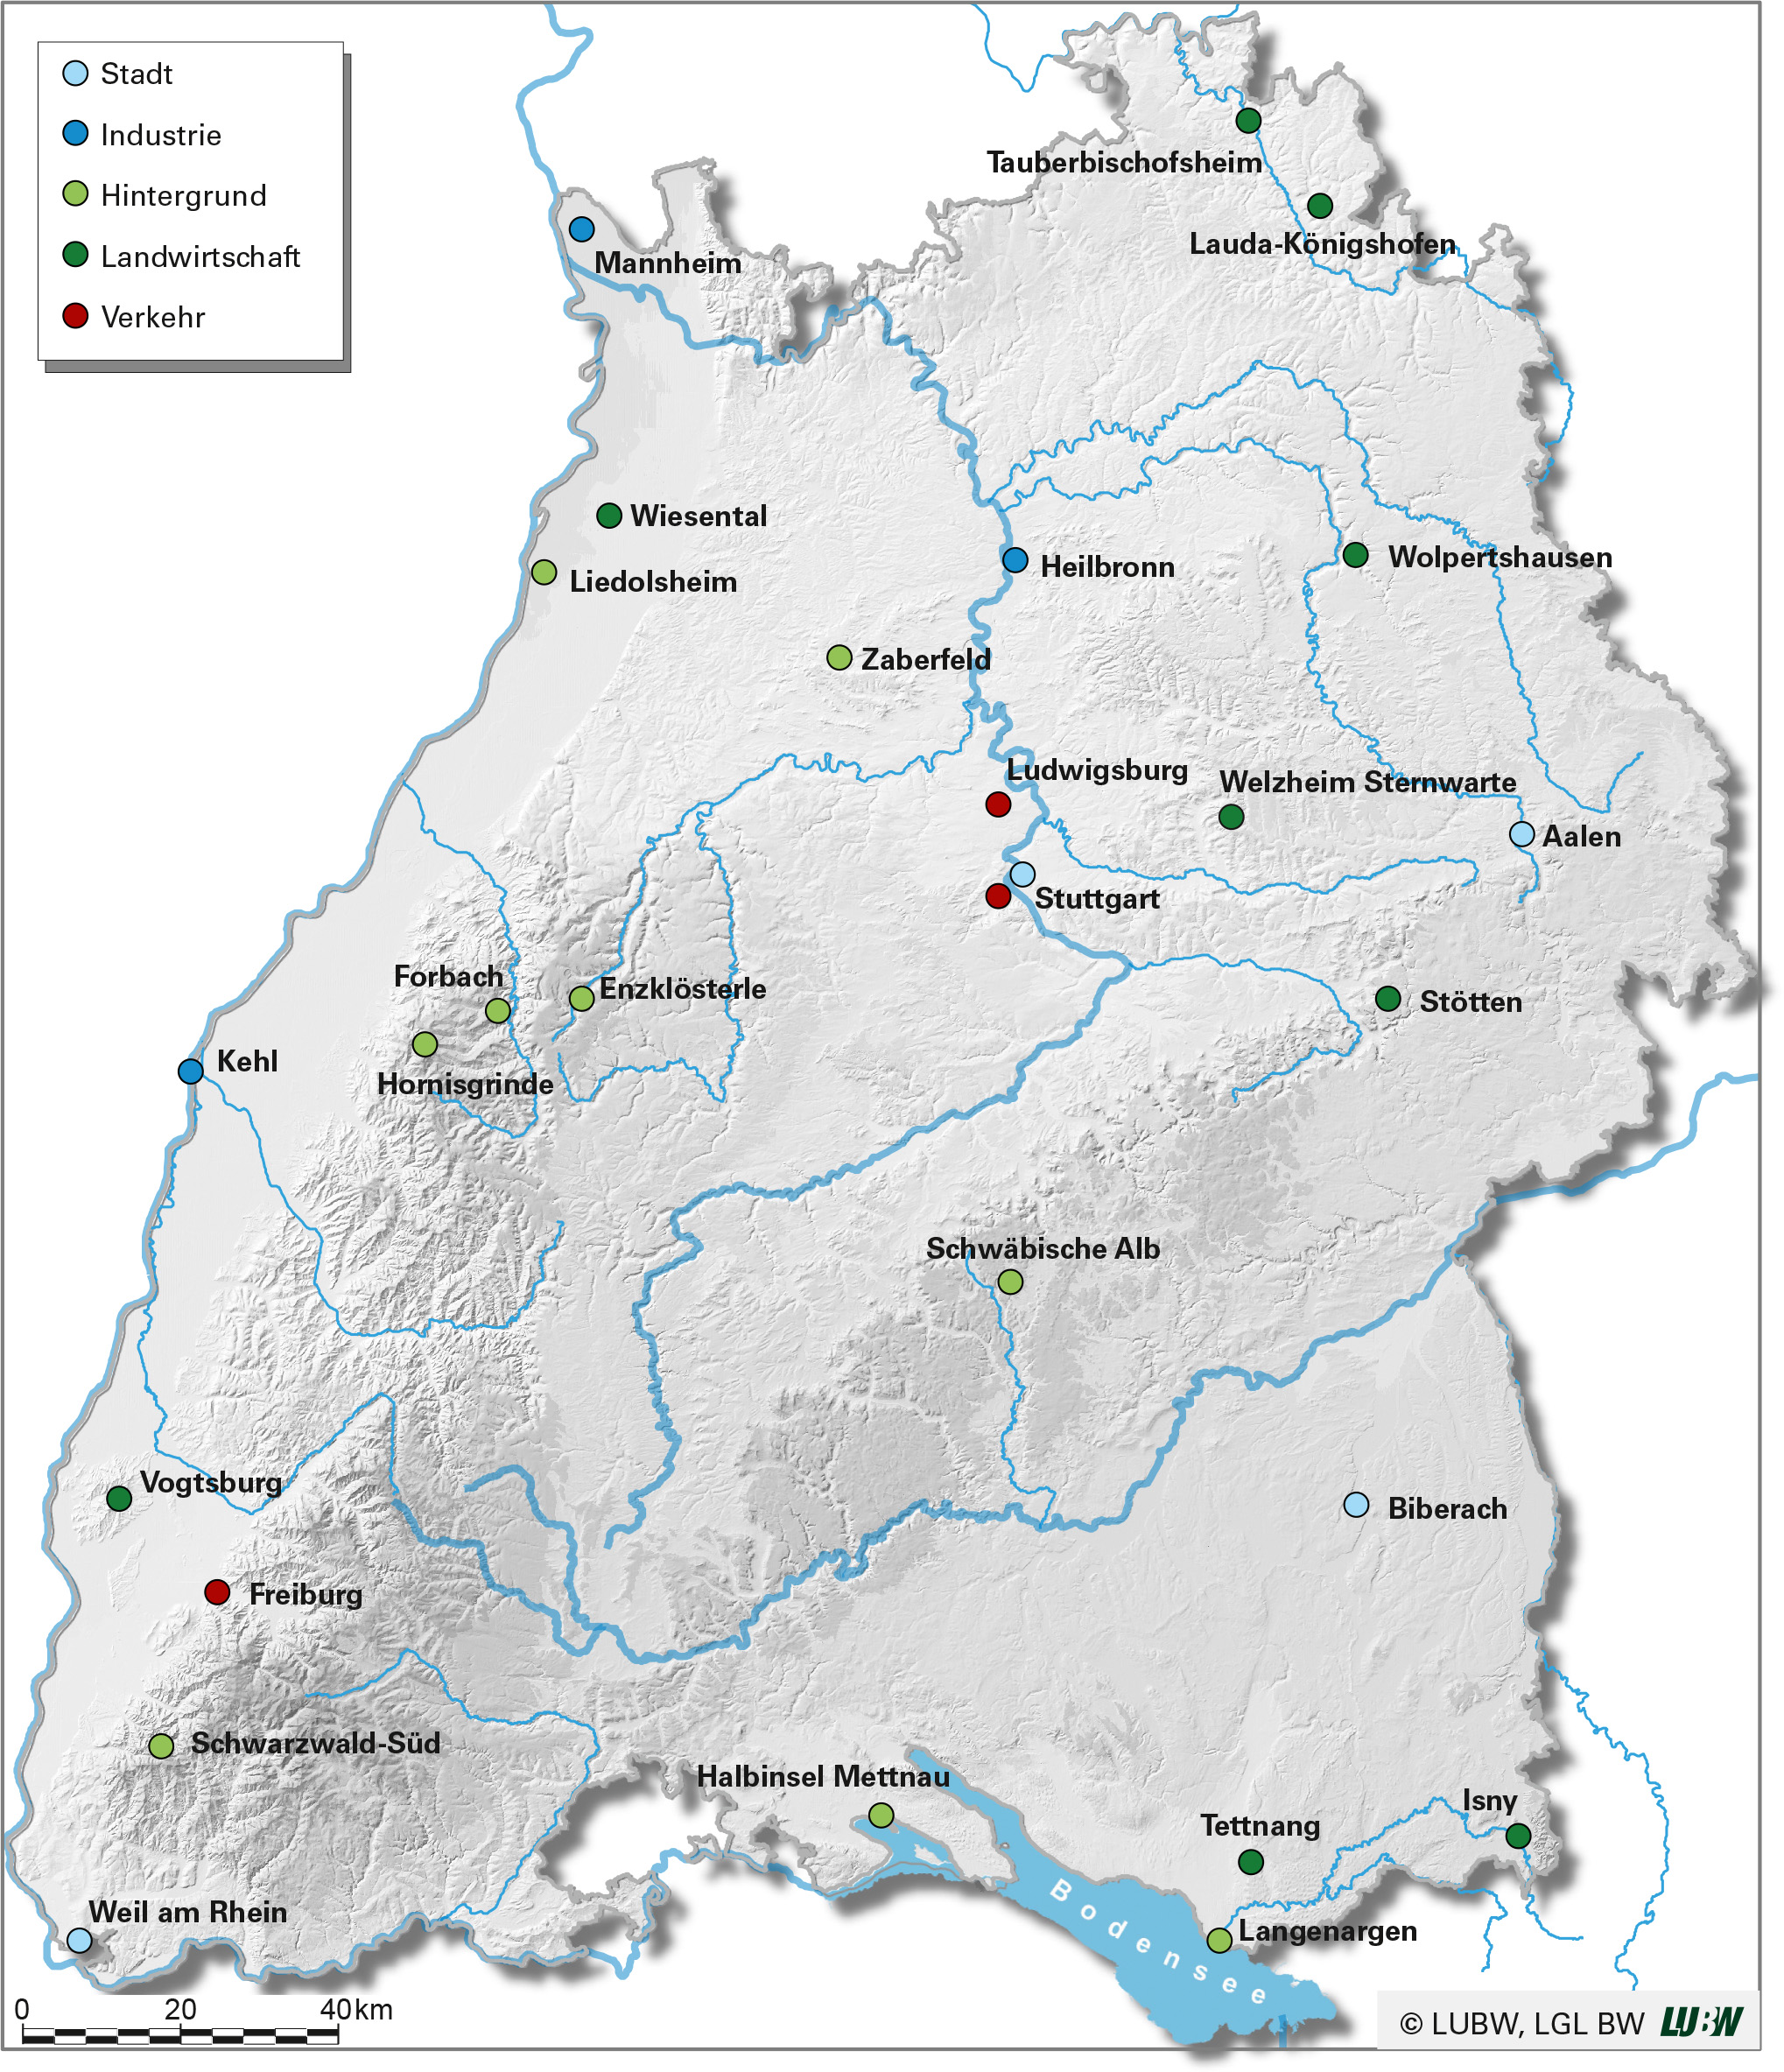 Topographische Karte von Baden-Württemberg. Die Ammoniakmessstellen im Jahr 2022 sind abhängig von ihrer Umgebung in die Kategorien Stadt, Industrie, Hintergrund, Landwirtschaft und Verkehr eingeteilt und unterschiedlich farblich markiert.